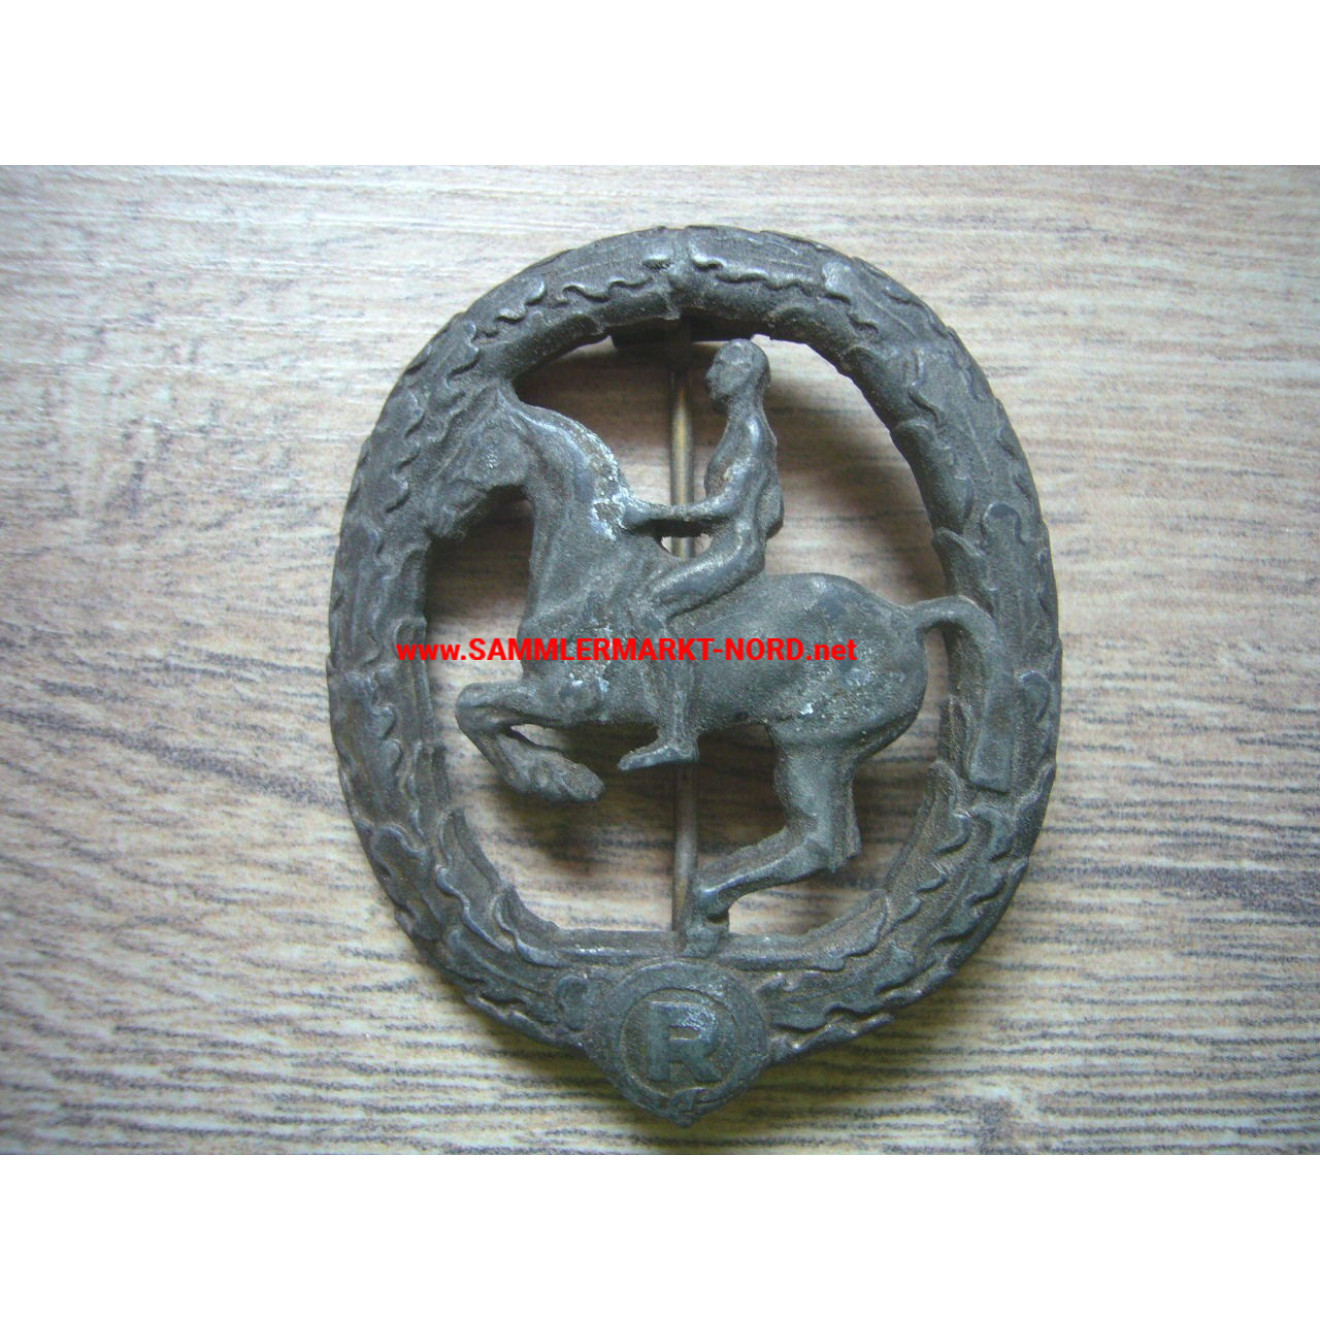 Deutsches Reiterabzeichen in Bronze